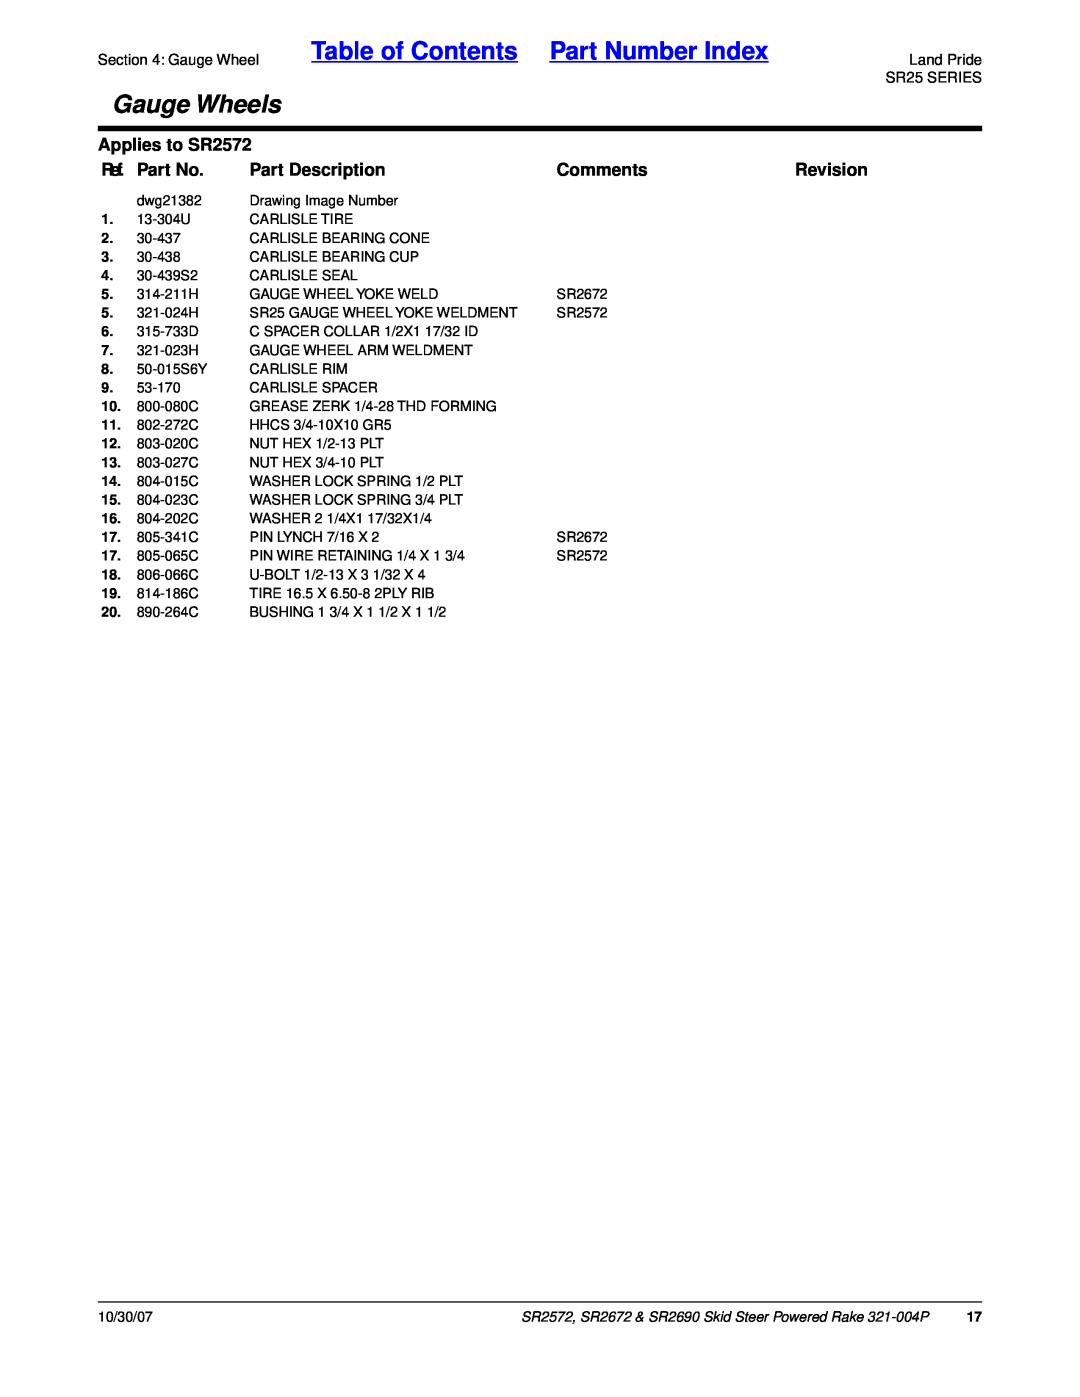 Land Pride SR2690 Table of Contents Part Number Index, Gauge Wheels, Applies to SR2572, Ref. Part No, Part Description 